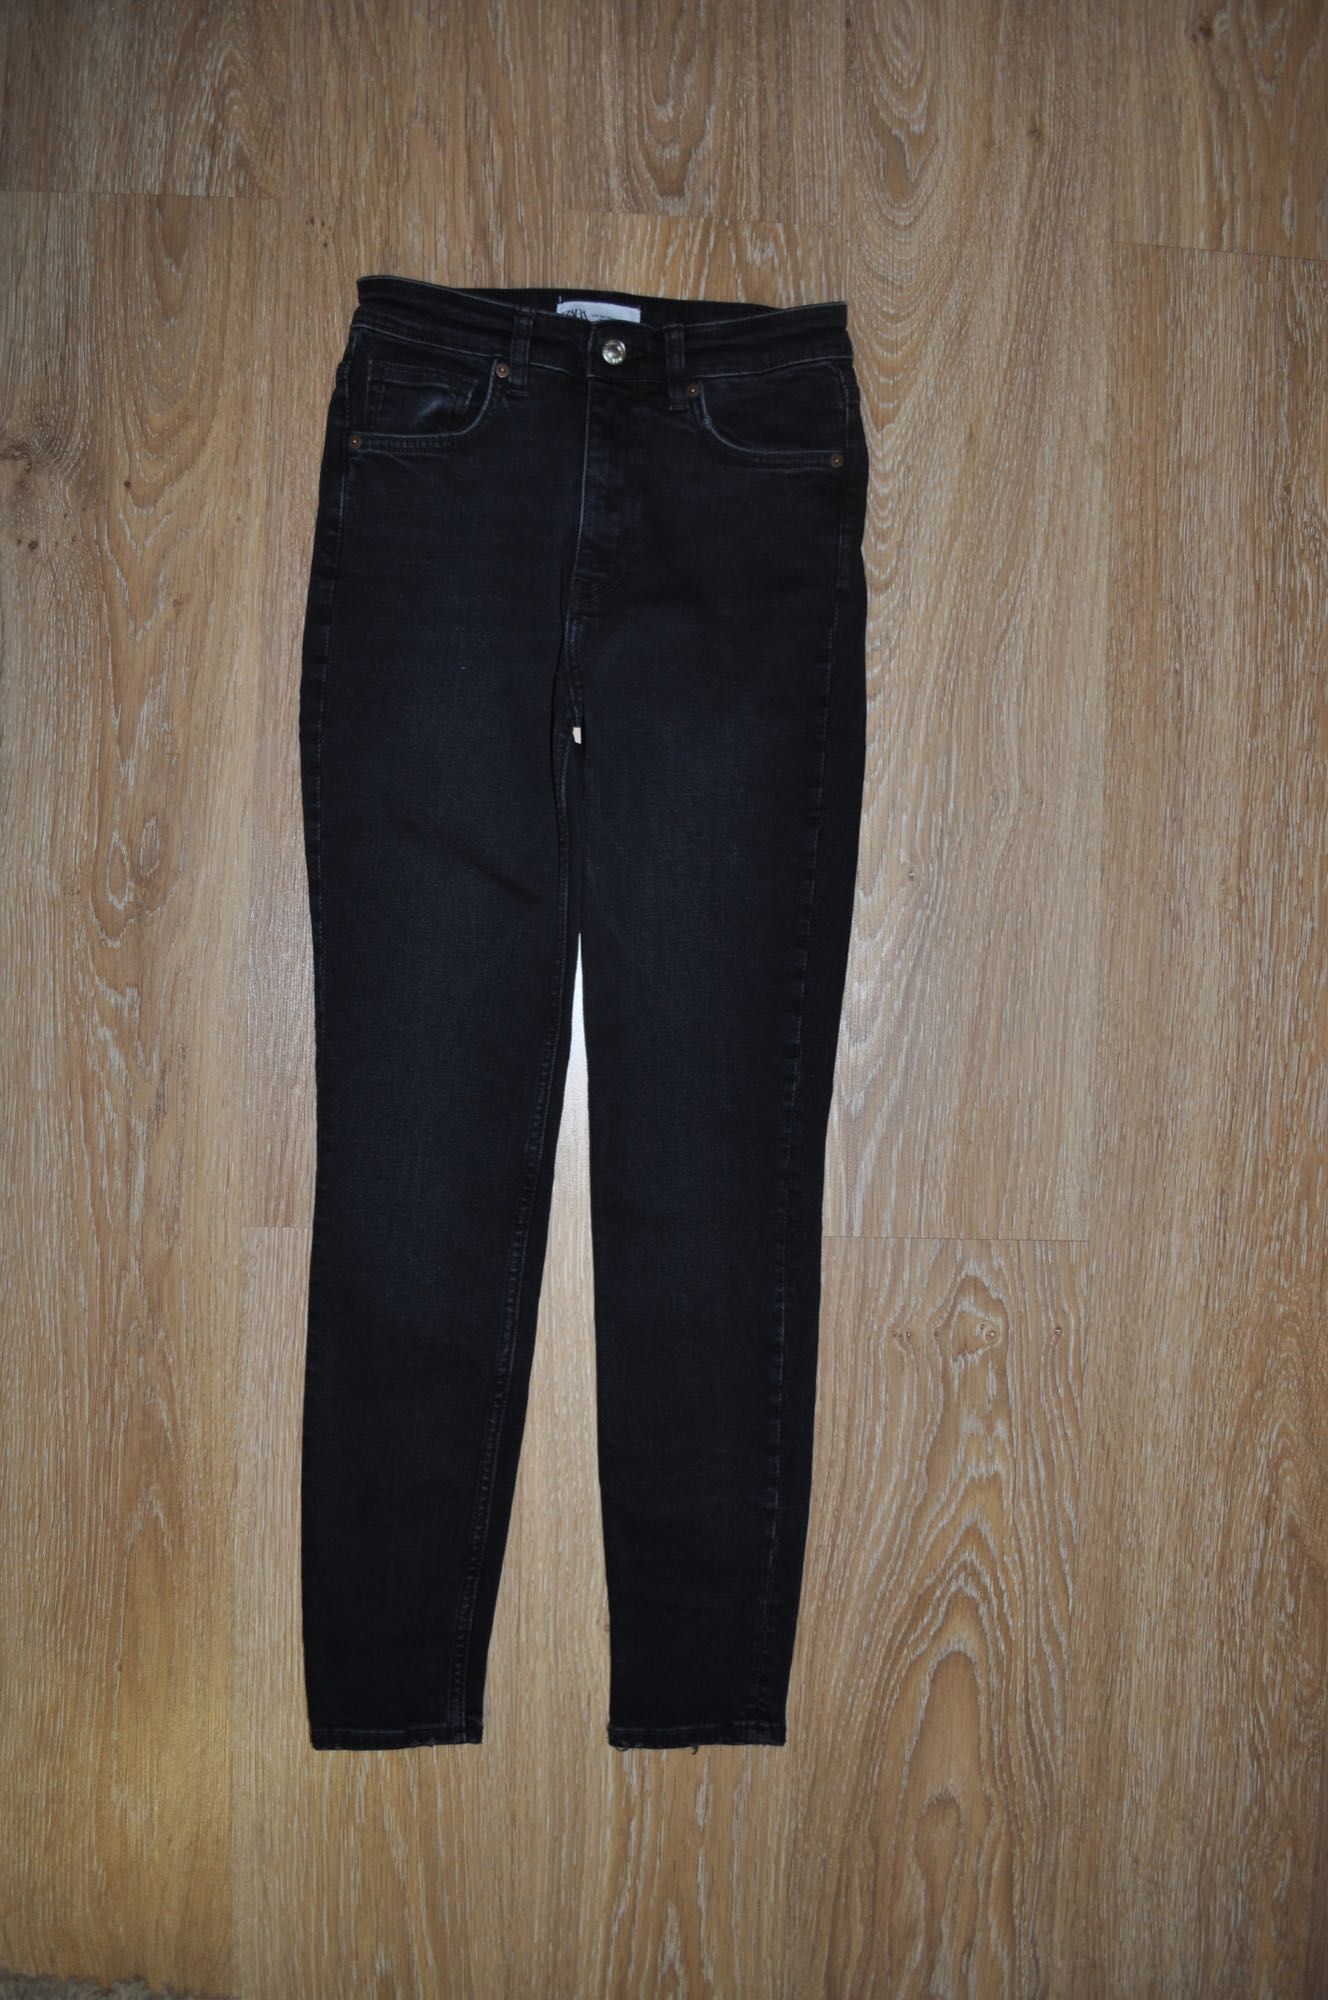 Базовые черные скинни, джинсы с высокой посадкой Zara